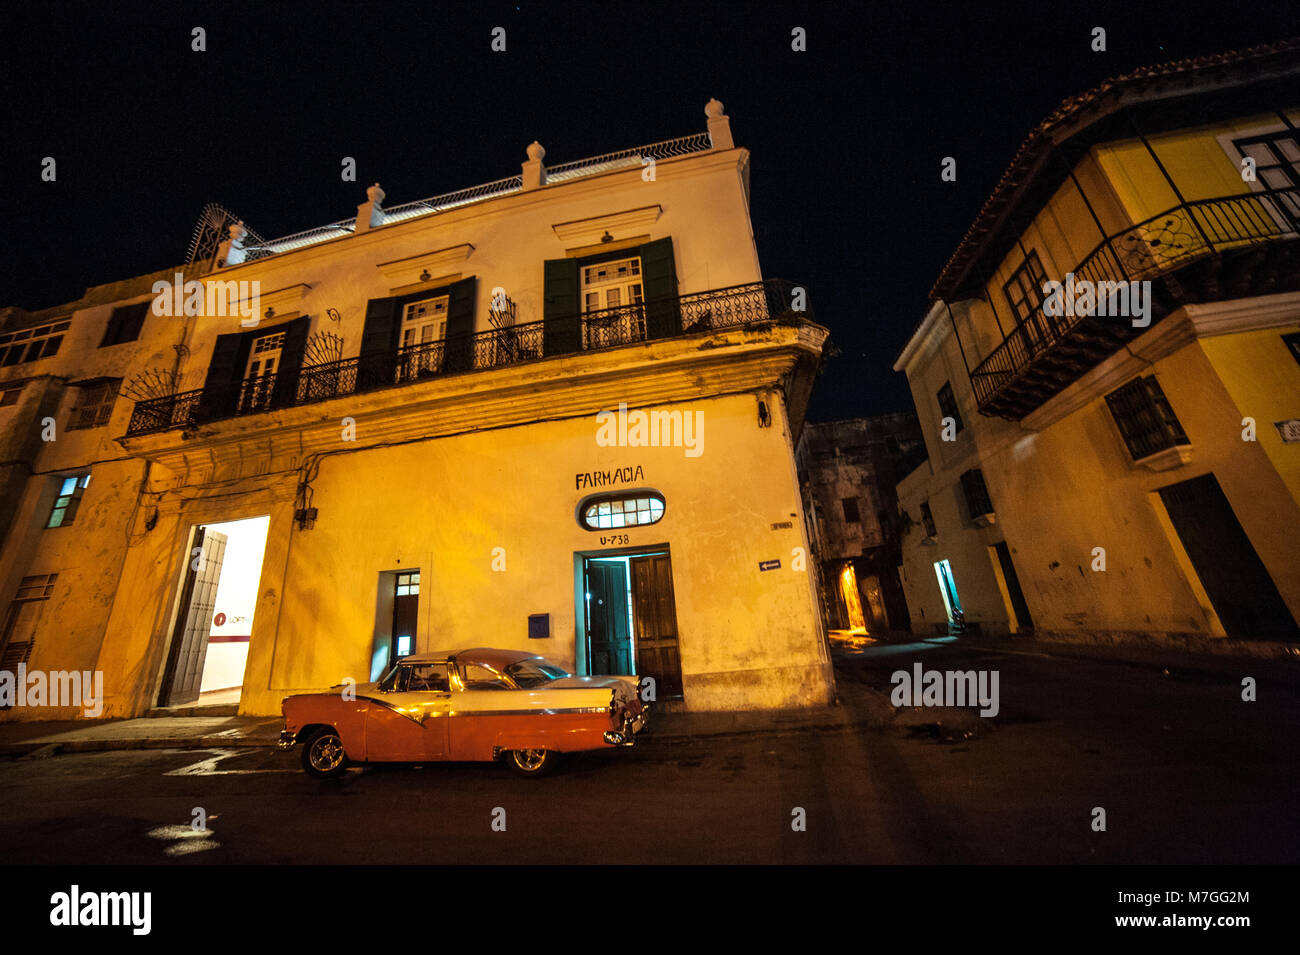 Un clásico americano coche aparcado fuera de una farmacia en La Habana, Cuba, en la noche Foto de stock